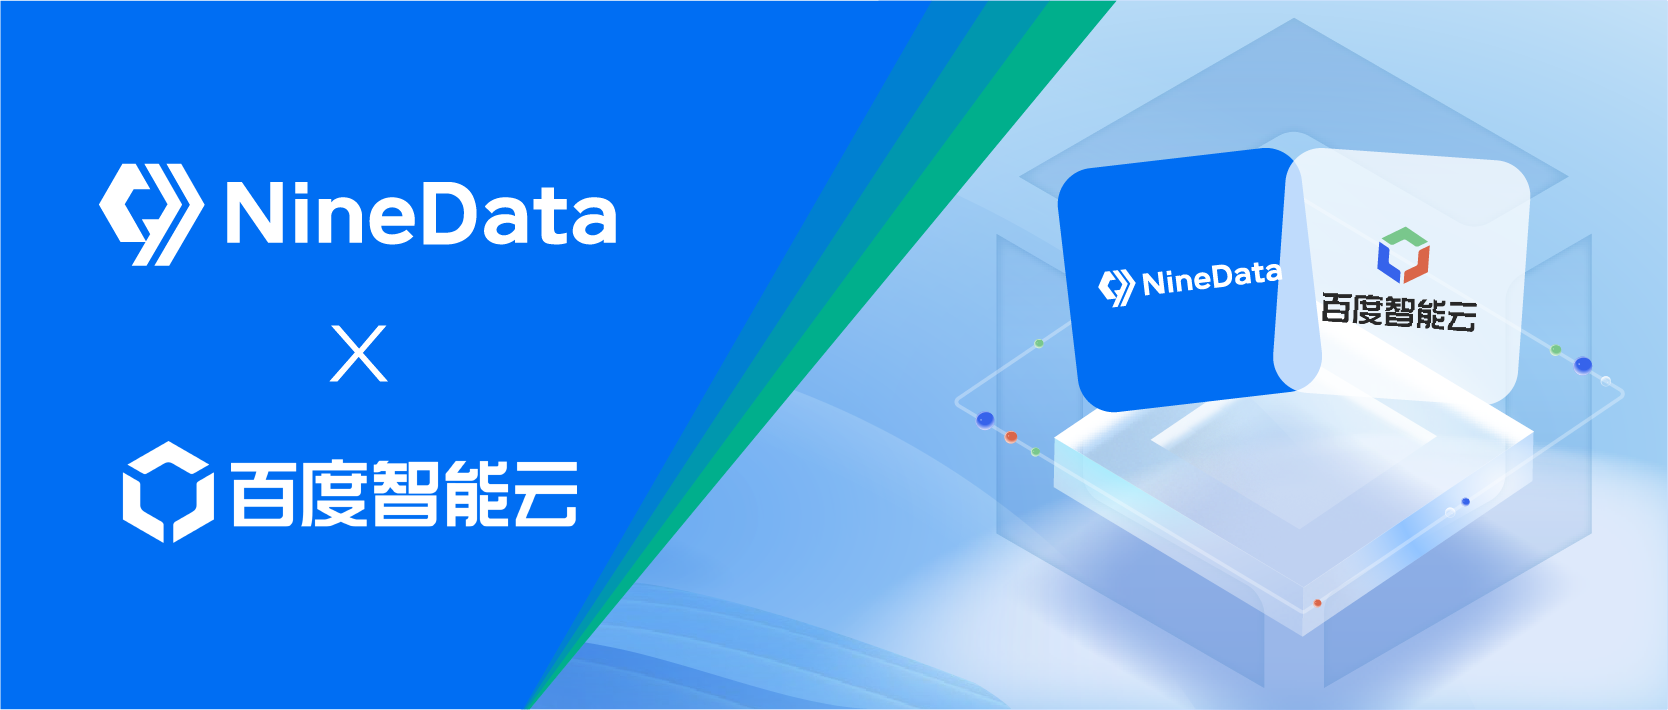 玖章算术与百度智能云达成合作，「NineData SQL 开发」成为百度智能云主推的数据库工具